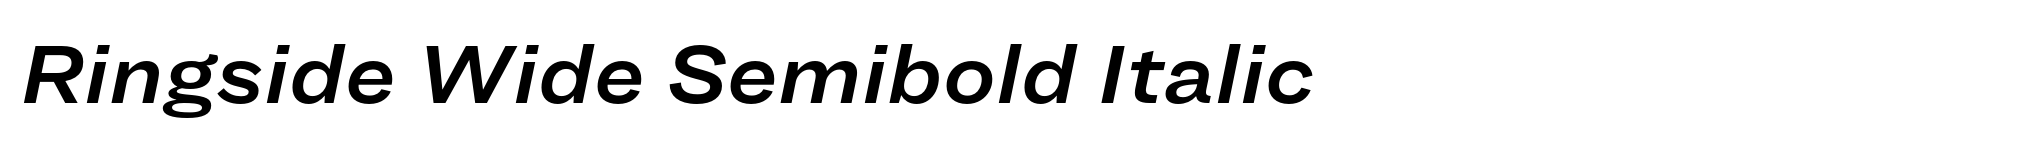 Ringside Wide Semibold Italic image